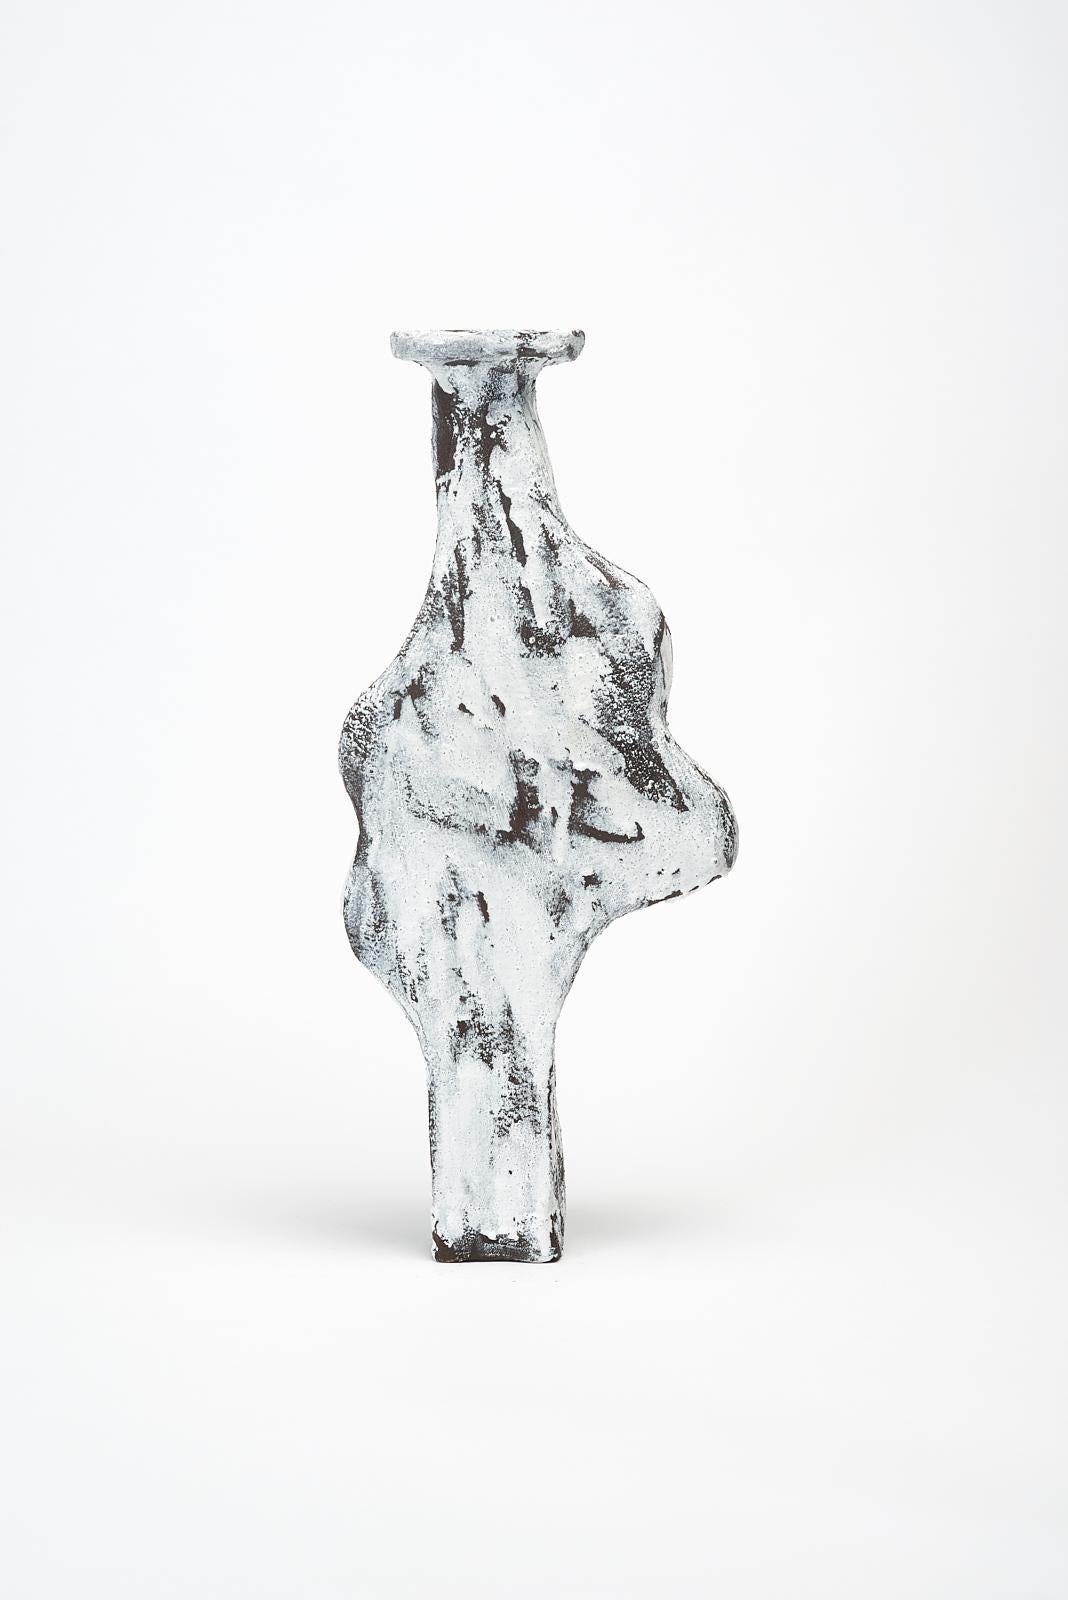 Geta-Vase von Willem Van hooff
Kerngefäß-Serie
Abmessungen: B 15 x H 39 cm (Die Maße können variieren, da die Stücke handgefertigt sind und leichte Größenabweichungen aufweisen können)
MATERIALIEN: Steingut, Keramik, Pigmente, Glasur.

Core ist eine